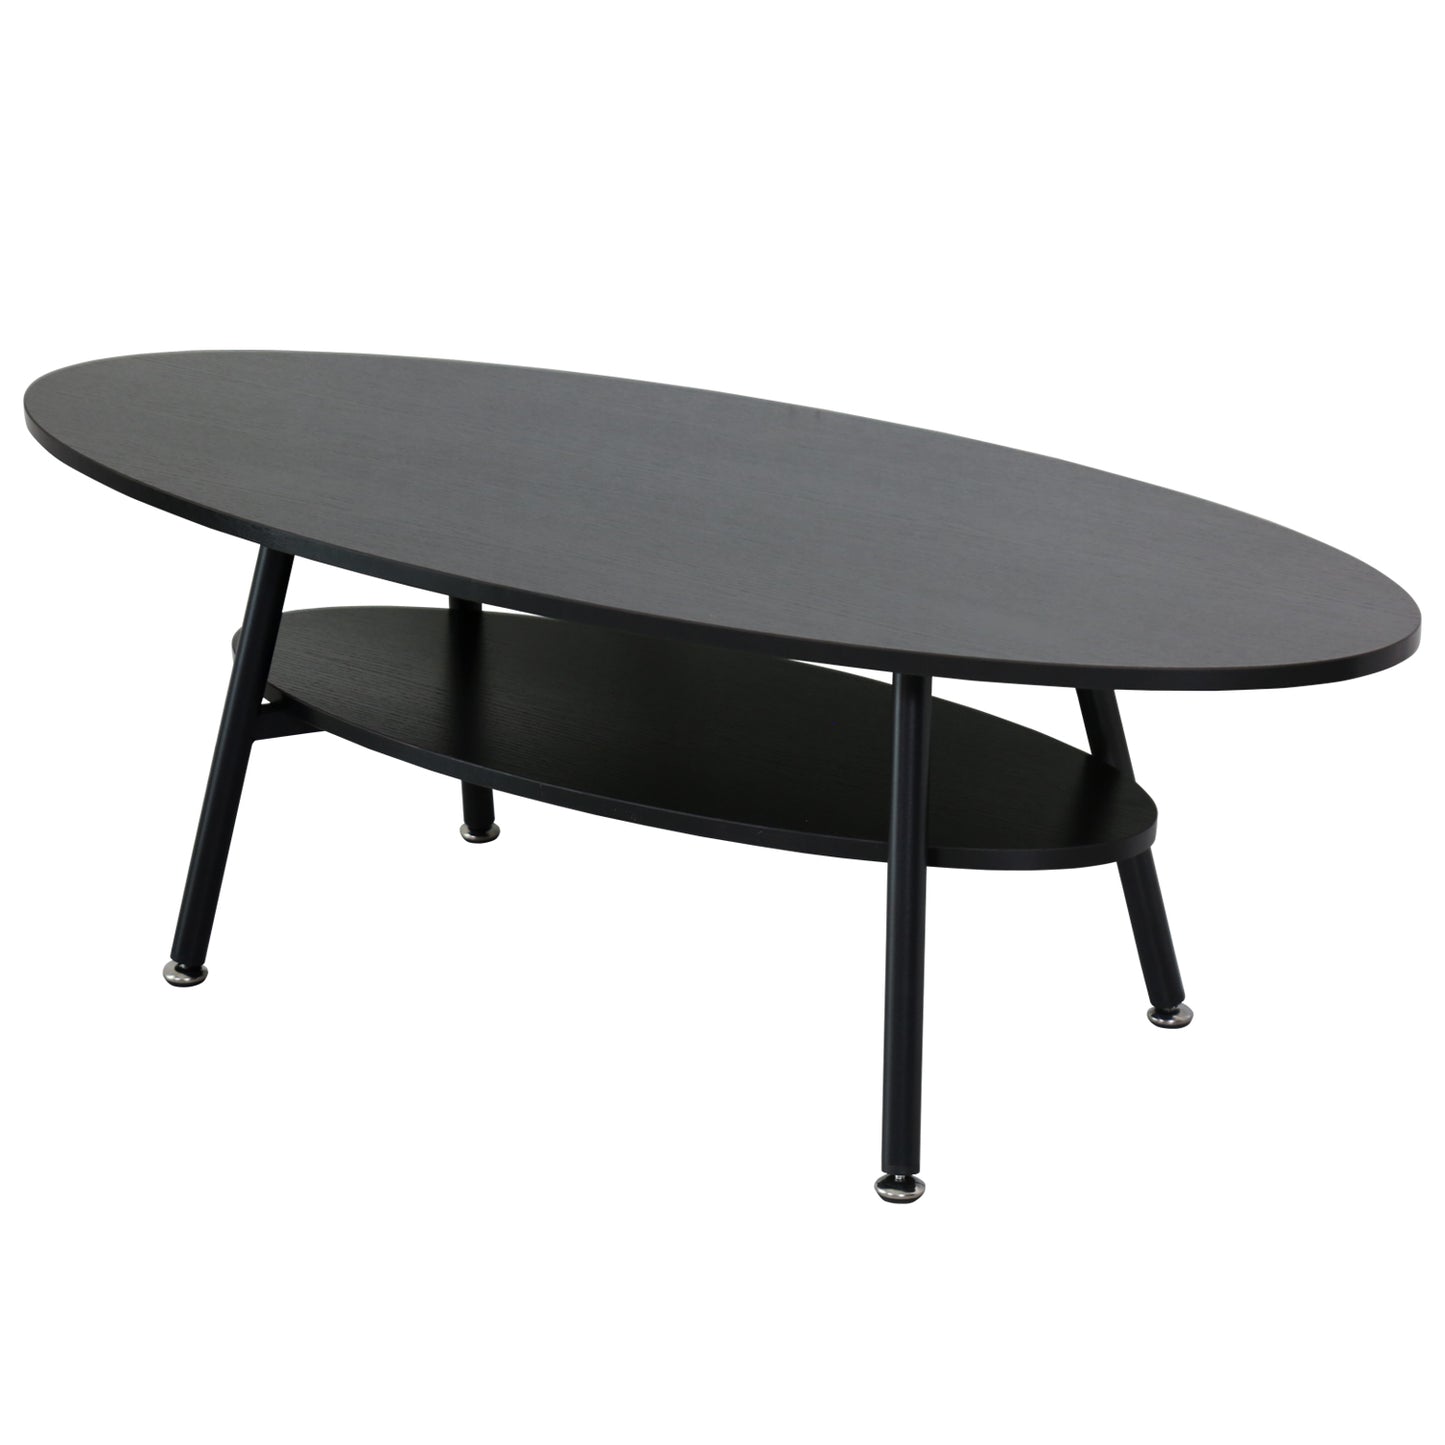 テーブル センターテーブル 楕円形 110 机 木製 ローテーブル ひとり暮らし 棚付き 家具 エルモ